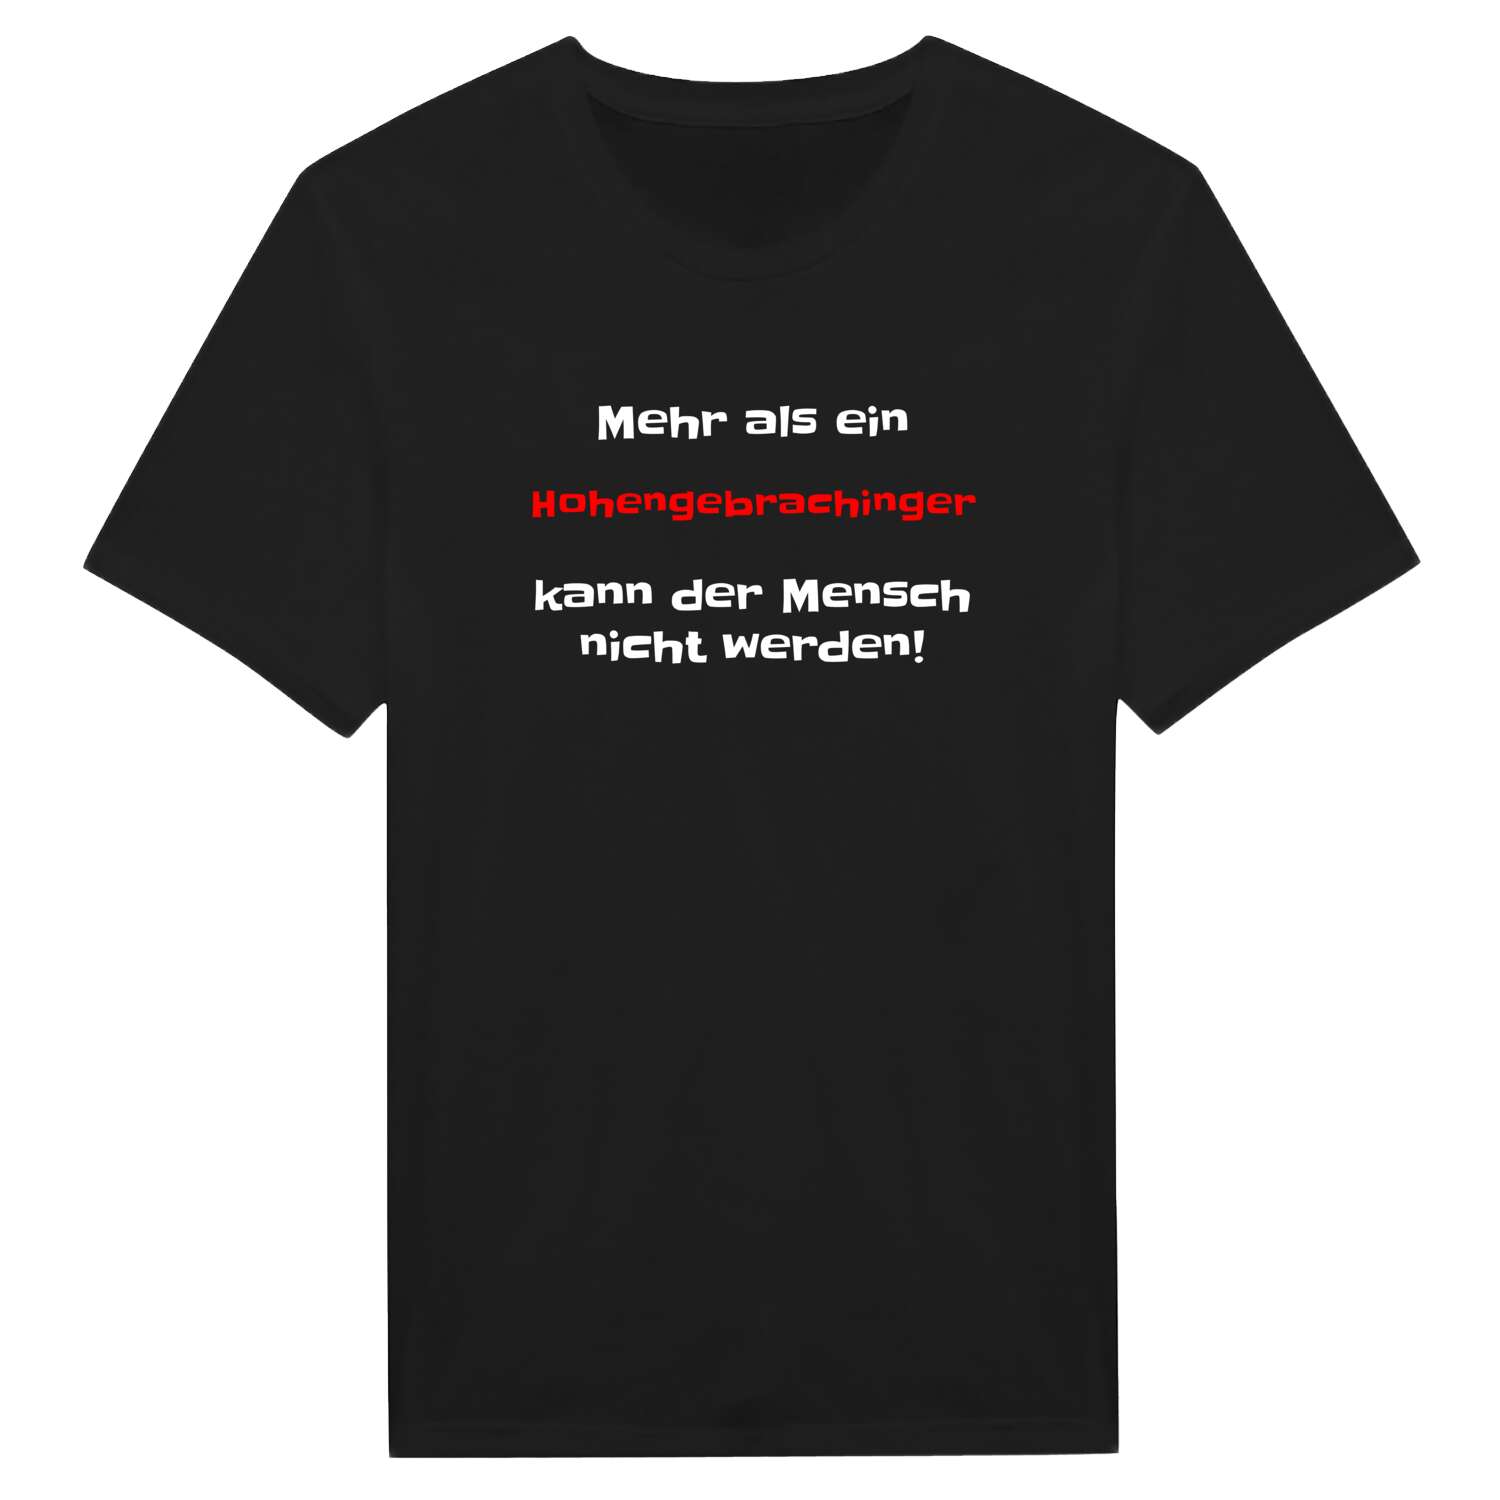 Hohengebraching T-Shirt »Mehr als ein«